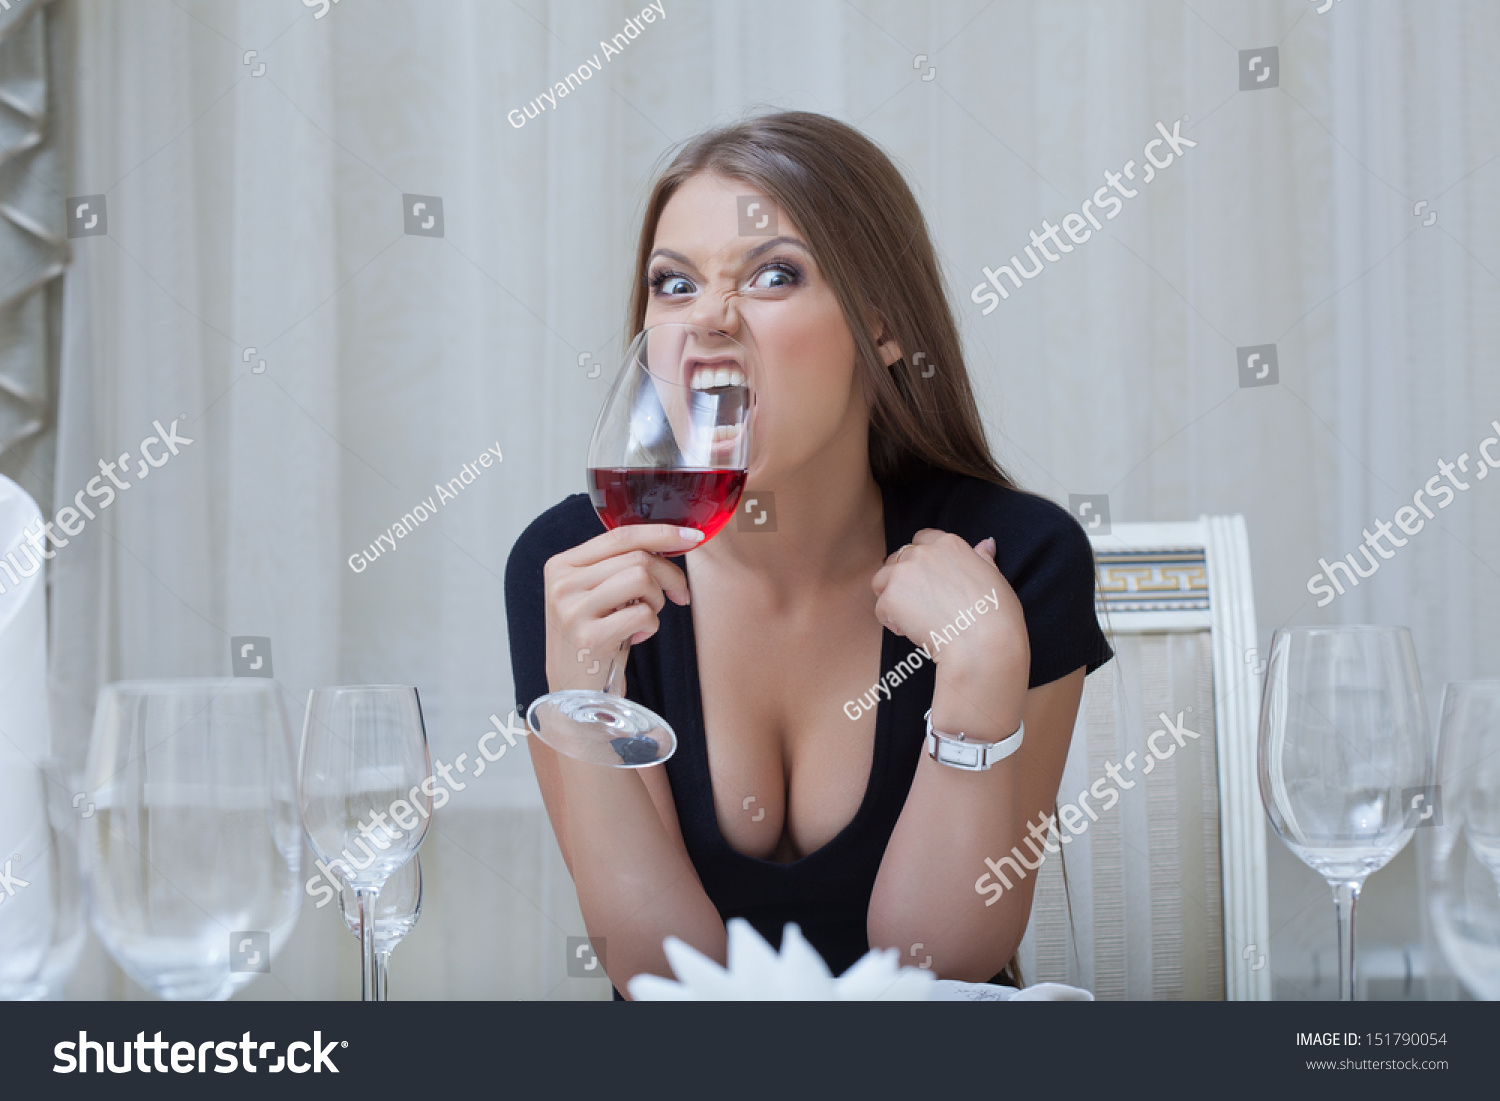 Грудастые смуглянки с большими дойками пьют шампанское за столом